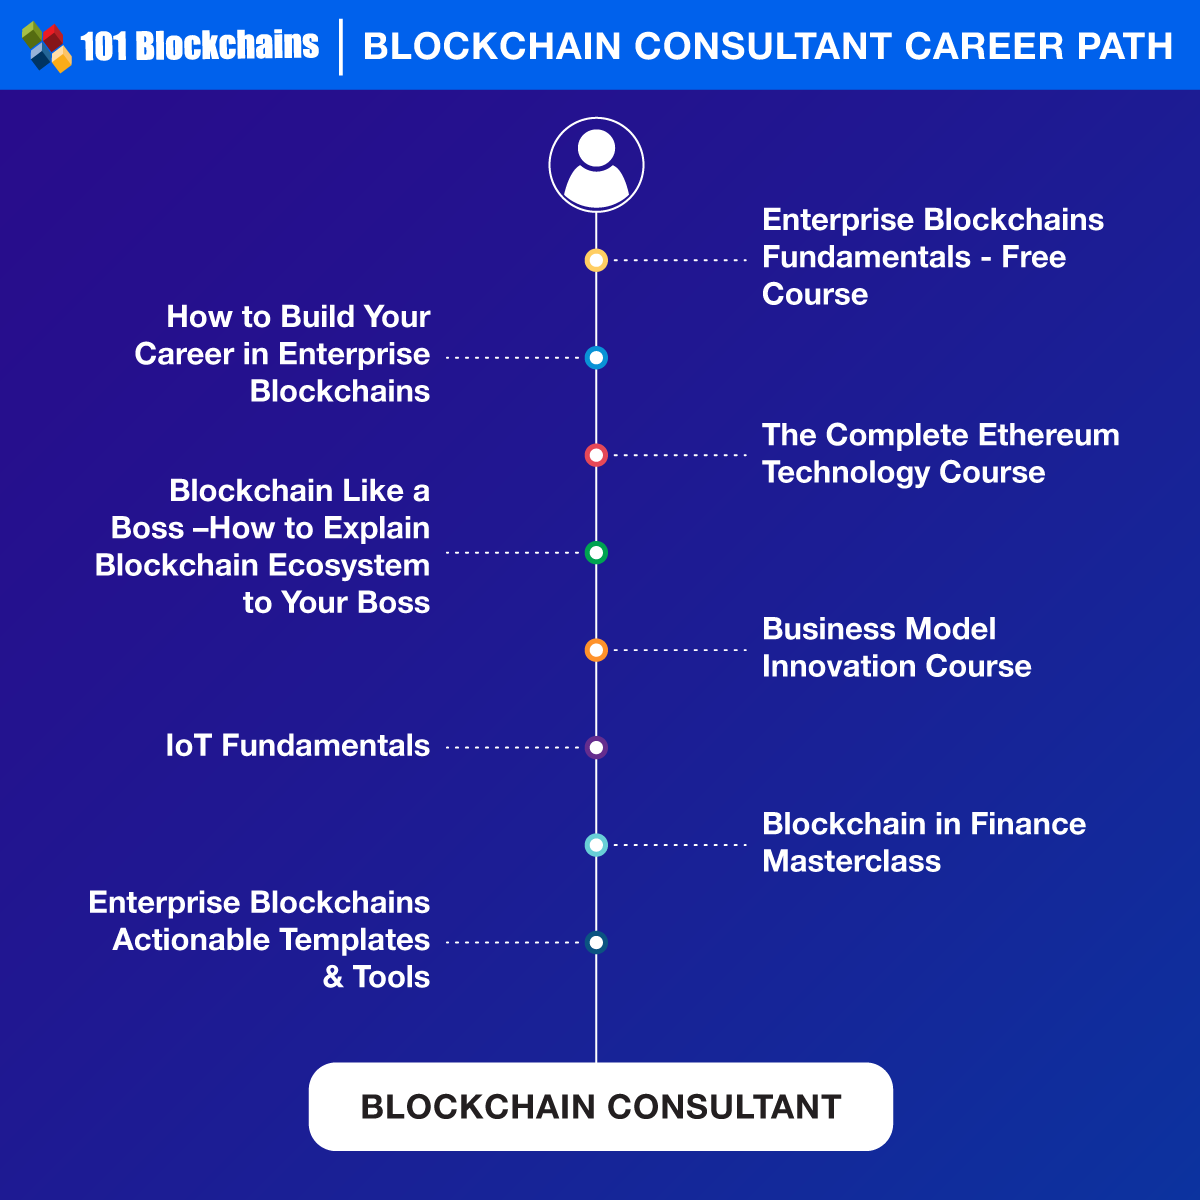 Blockchain Consultant Career Path